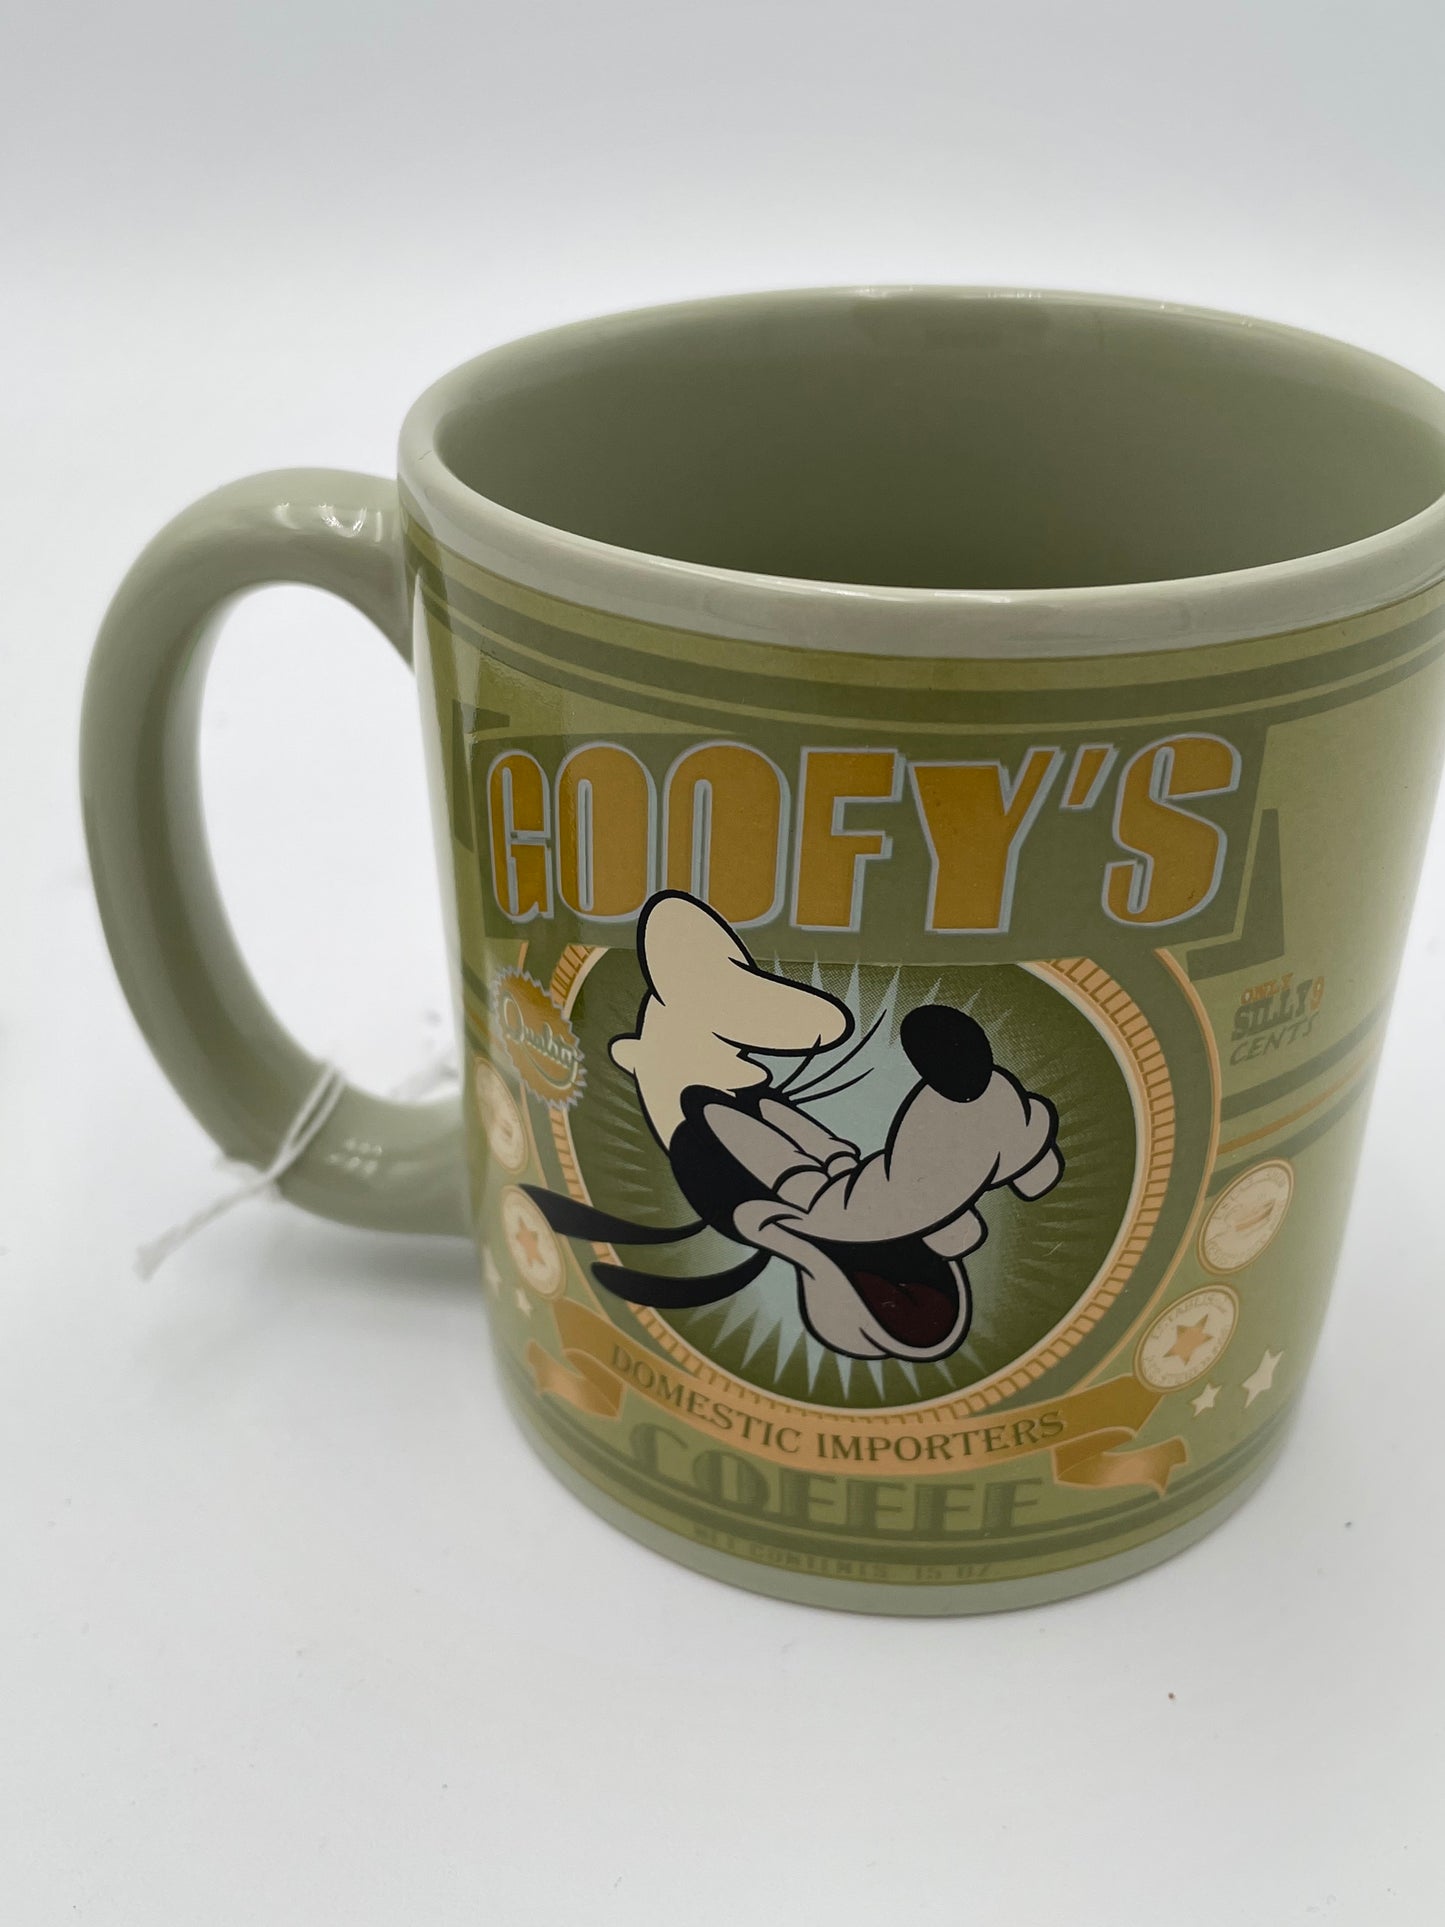 Disney - Goofy “Domestic Import” Mug & Coaster Set #102718